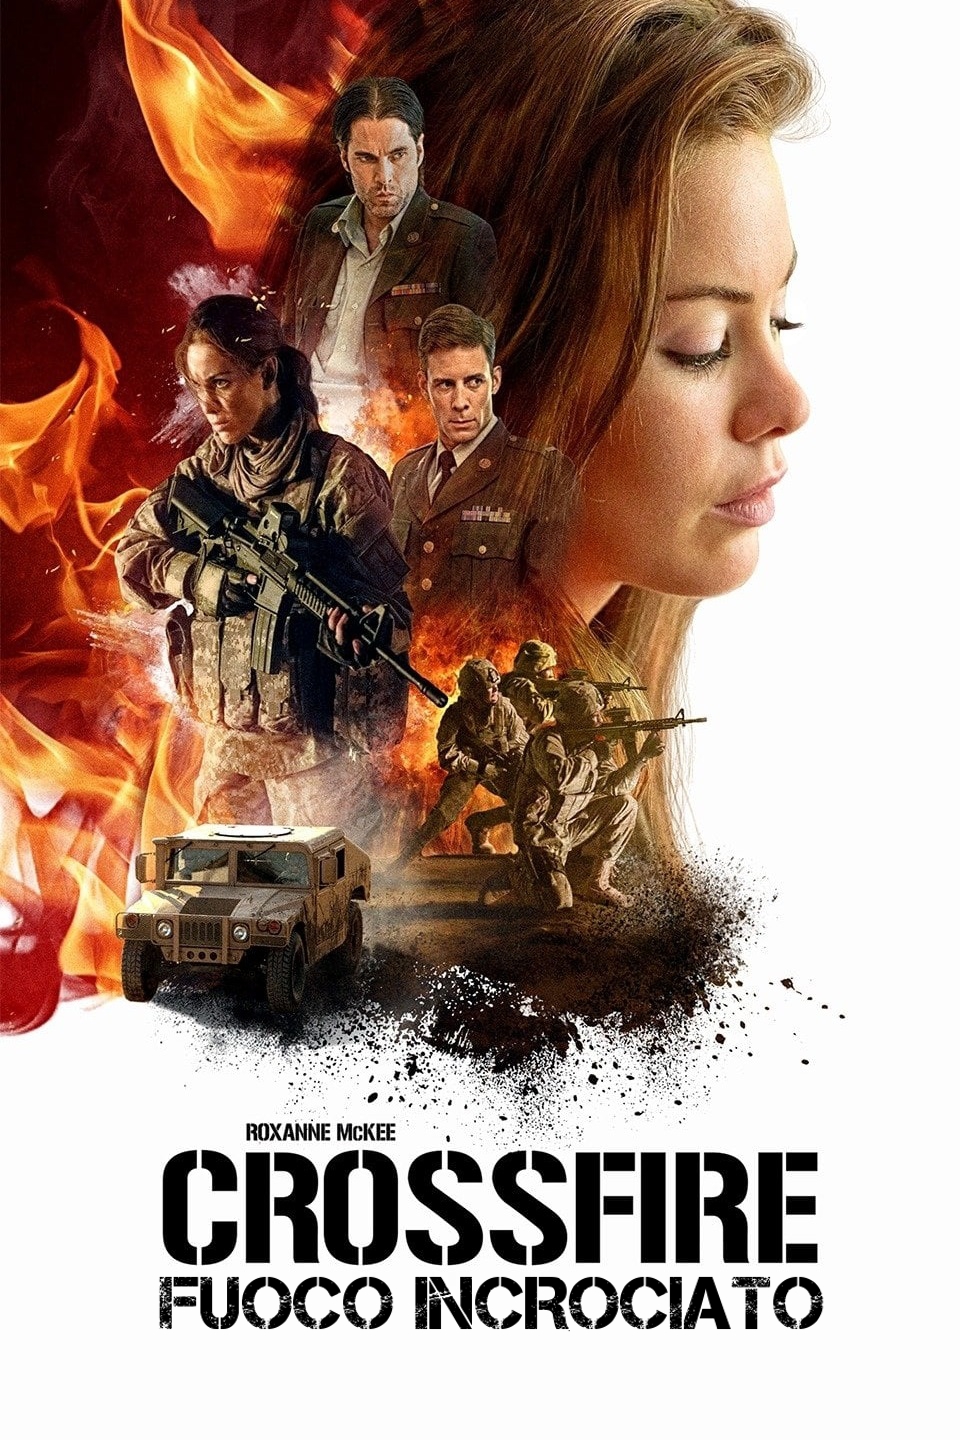 Crossfire – Fuoco incrociato [HD] (2016)